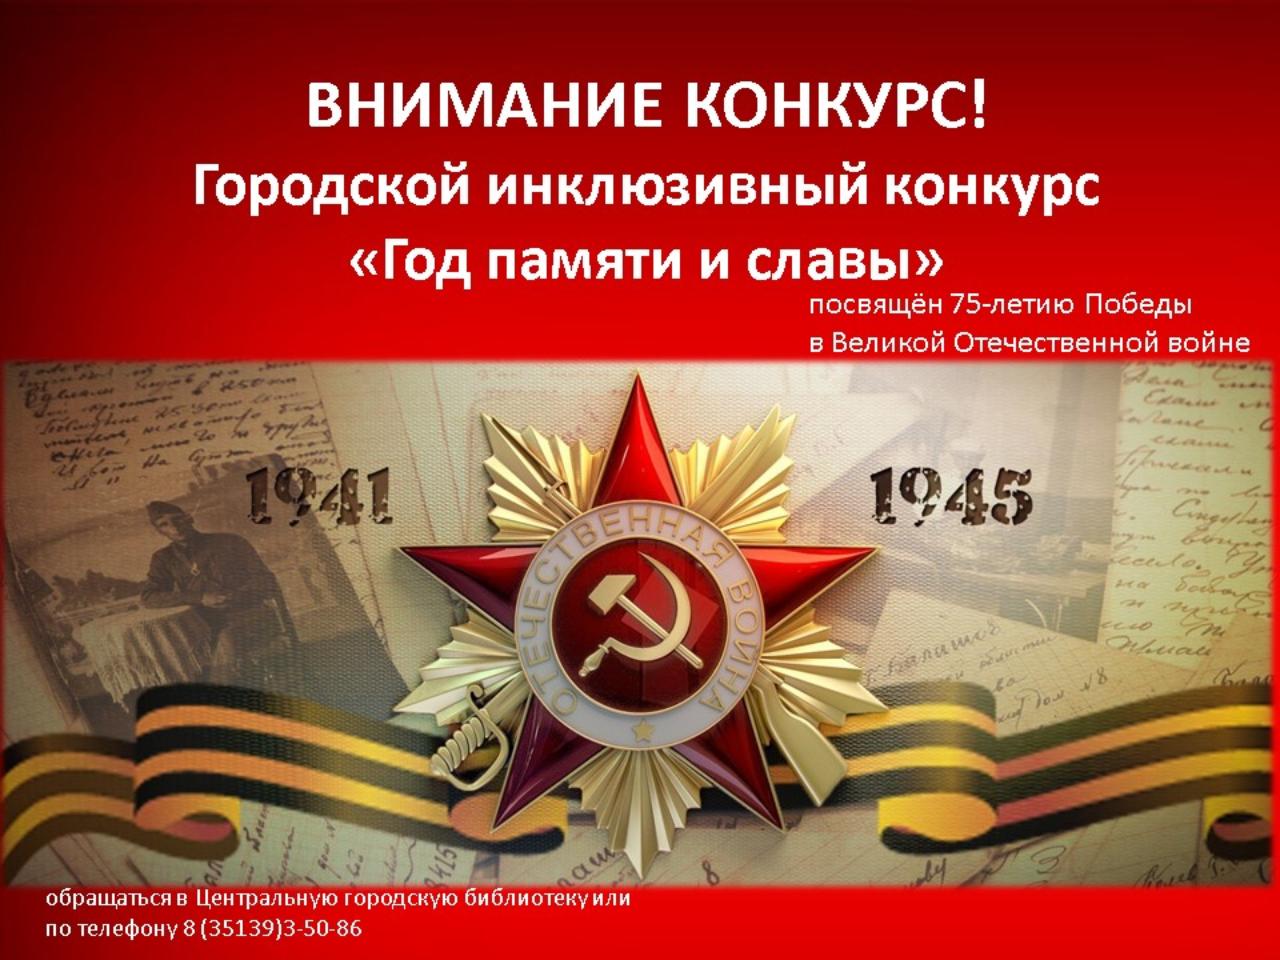 Приглашаем к участию в инклюзивном конкурсе «Год памяти и славы», посвящённом 75-летию Победы в Великой Отечественной войне